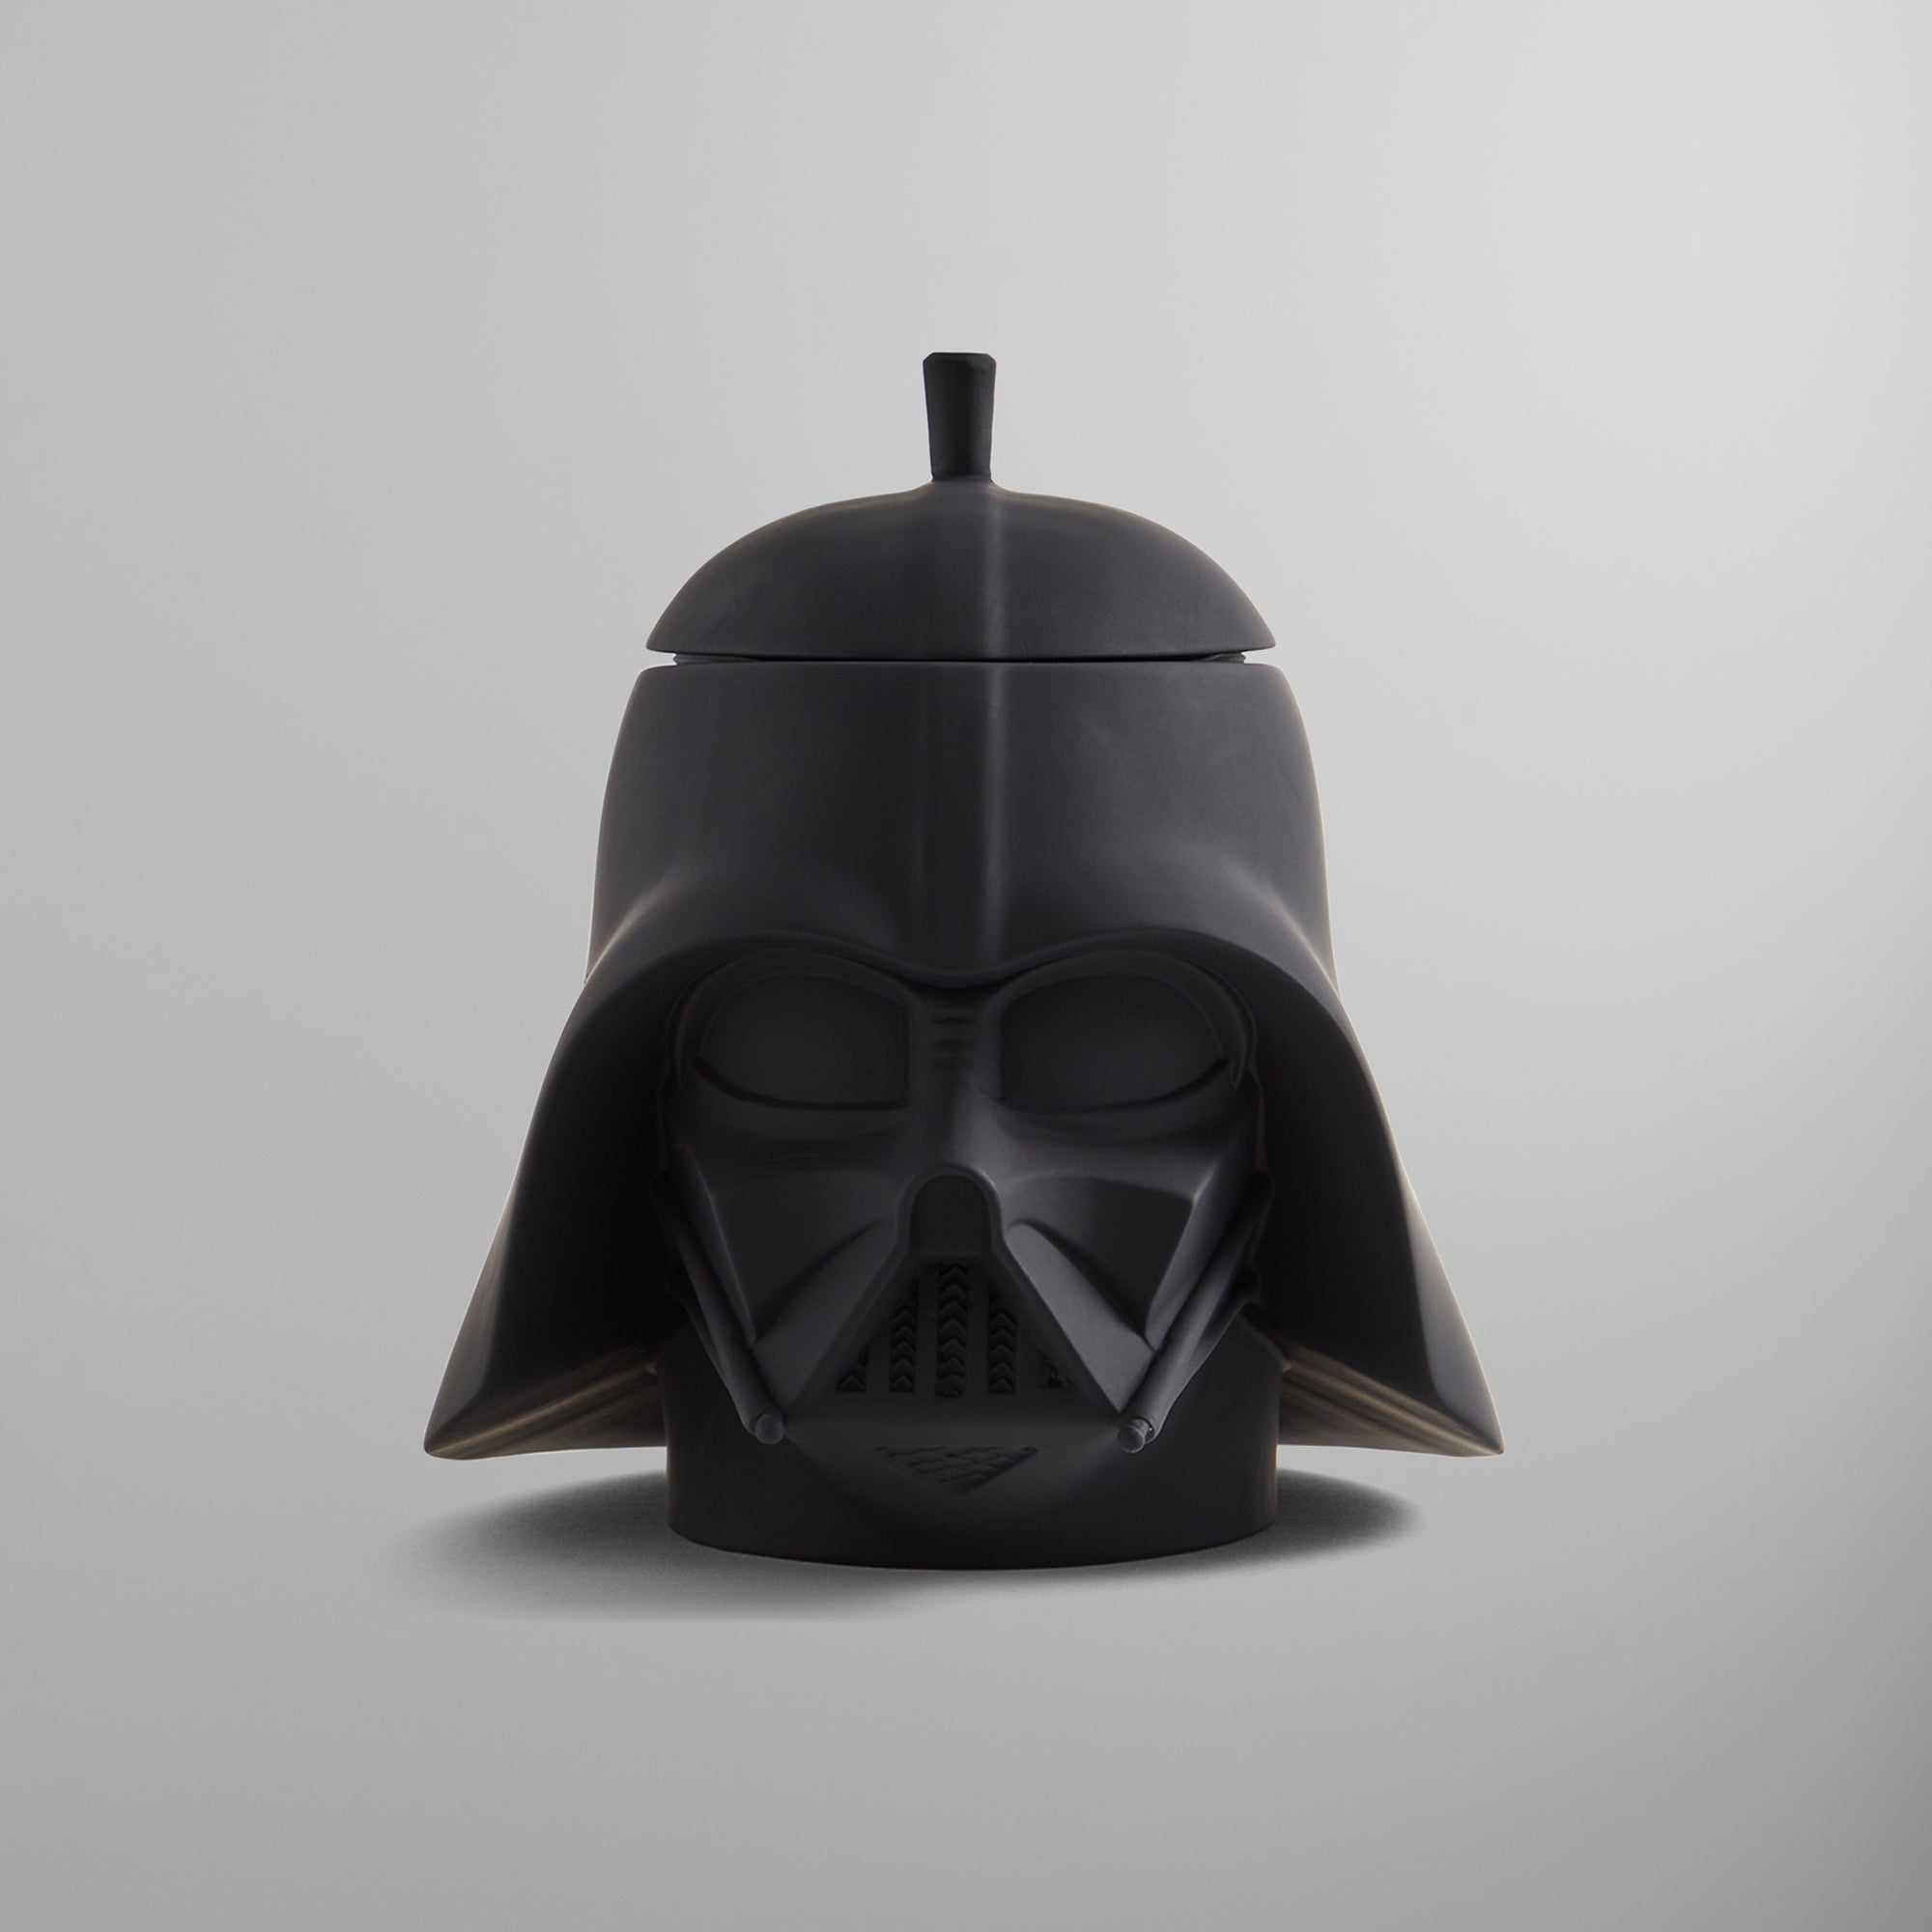 Kith Star Wars Darth Vader Helmet Black